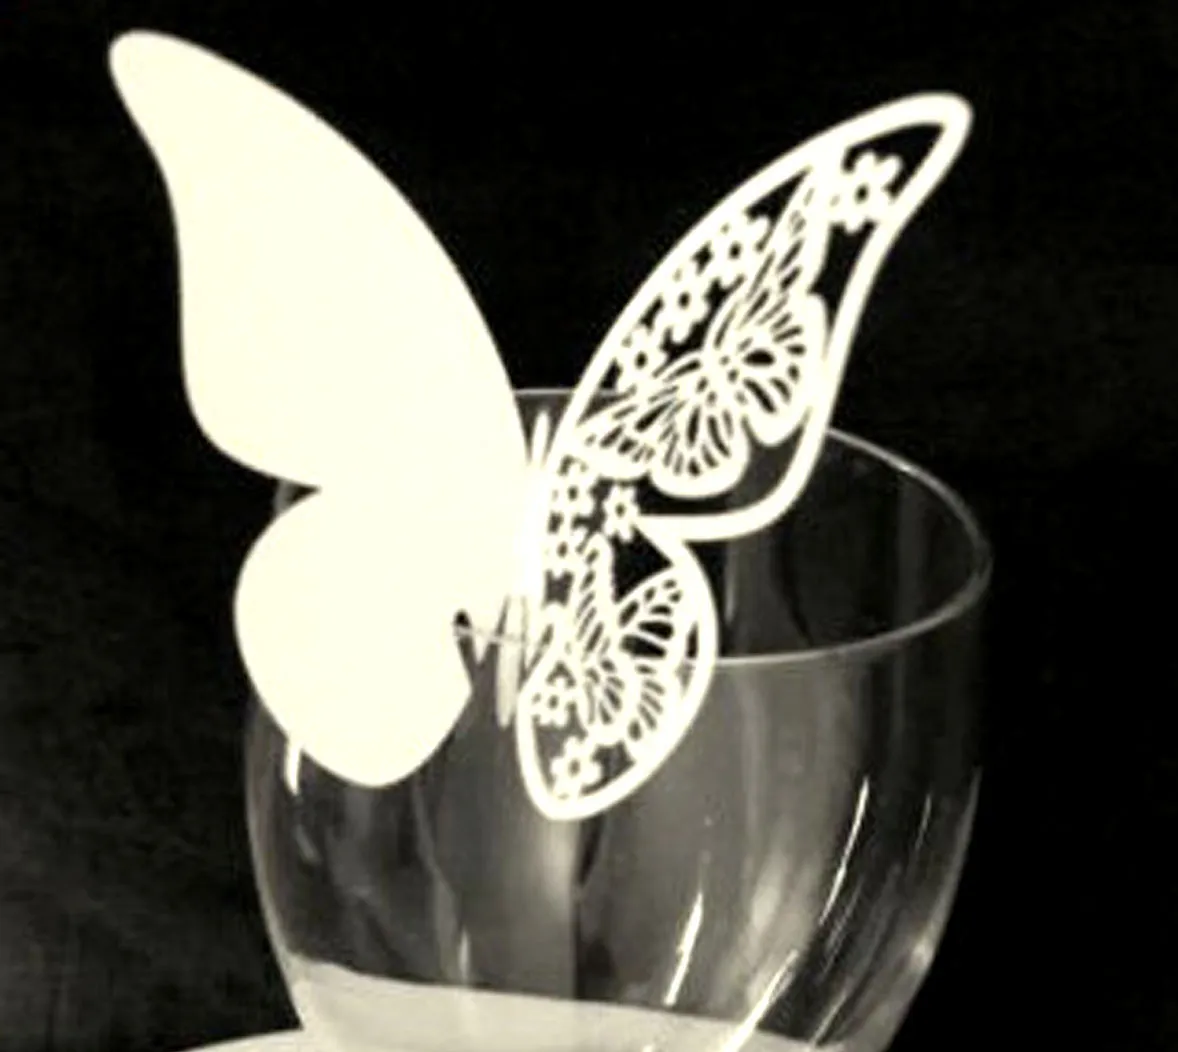 50 pz / lotto Hollow Butterfly Cup Card Decorazione Bicchiere da vino Carta tagliata al laser Nome Posti a sedere Carte Favore Festa di nozze Baby Shower Decorazioni da tavola JY0872